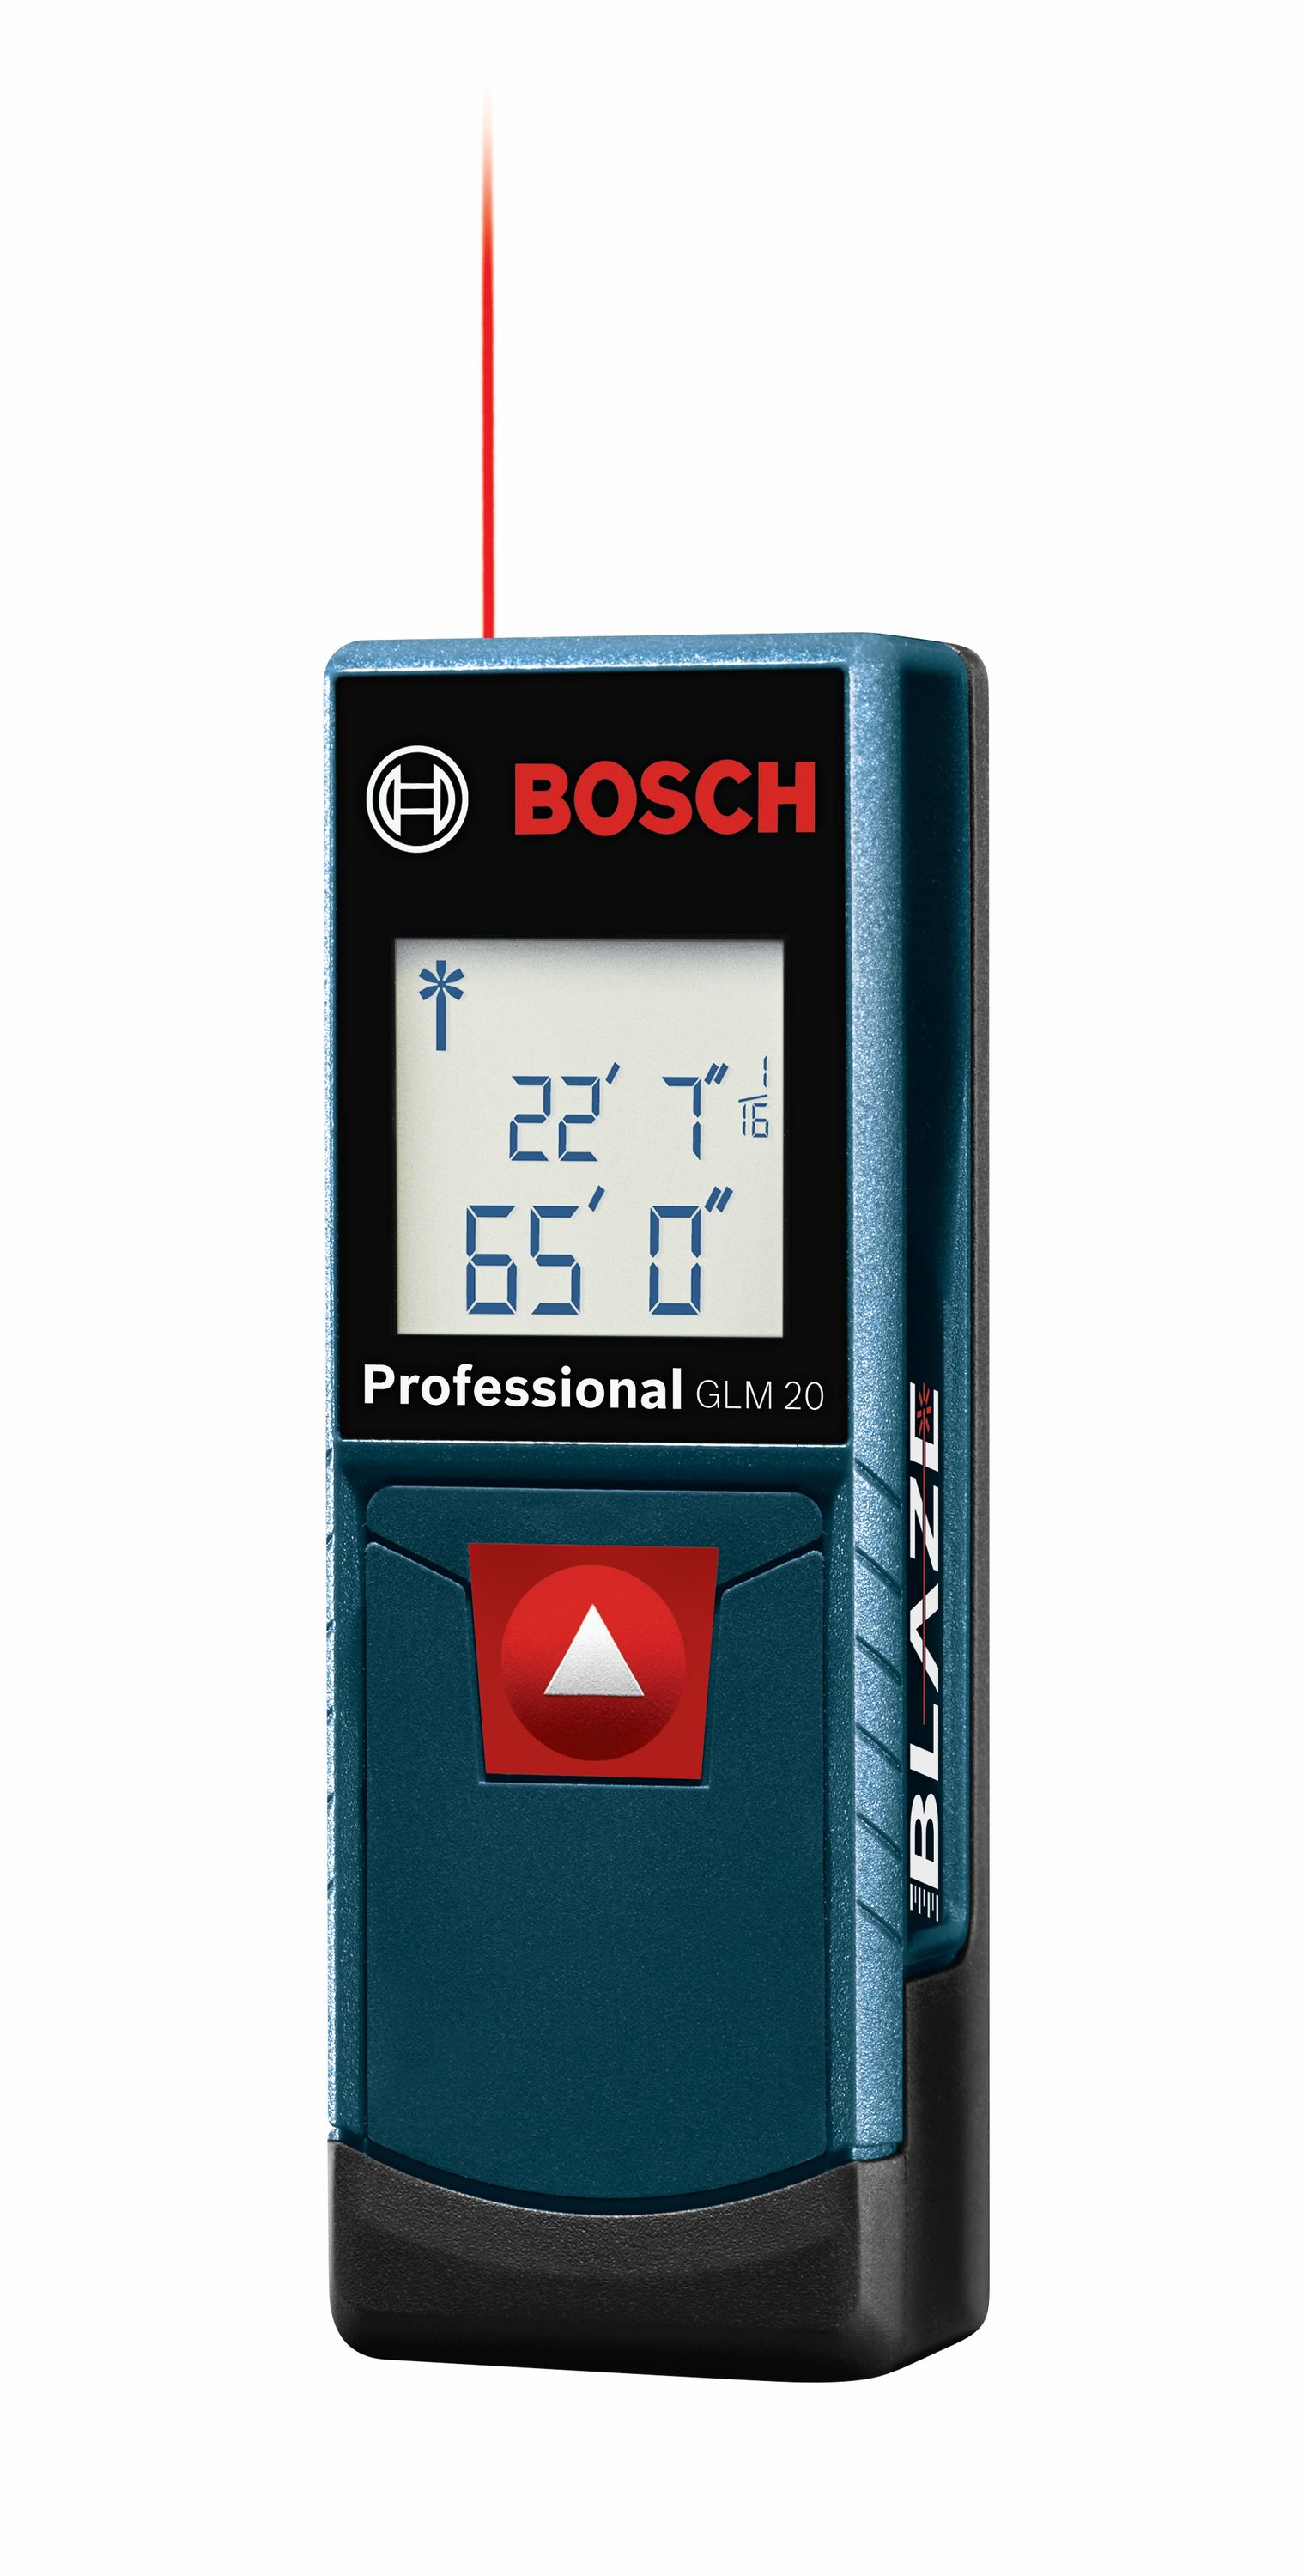 Bosch BLAZE 65-ft Outdoor Laser Distance Measurer with Backlit Display in the Laser Distance Measurers department at Lowes.com